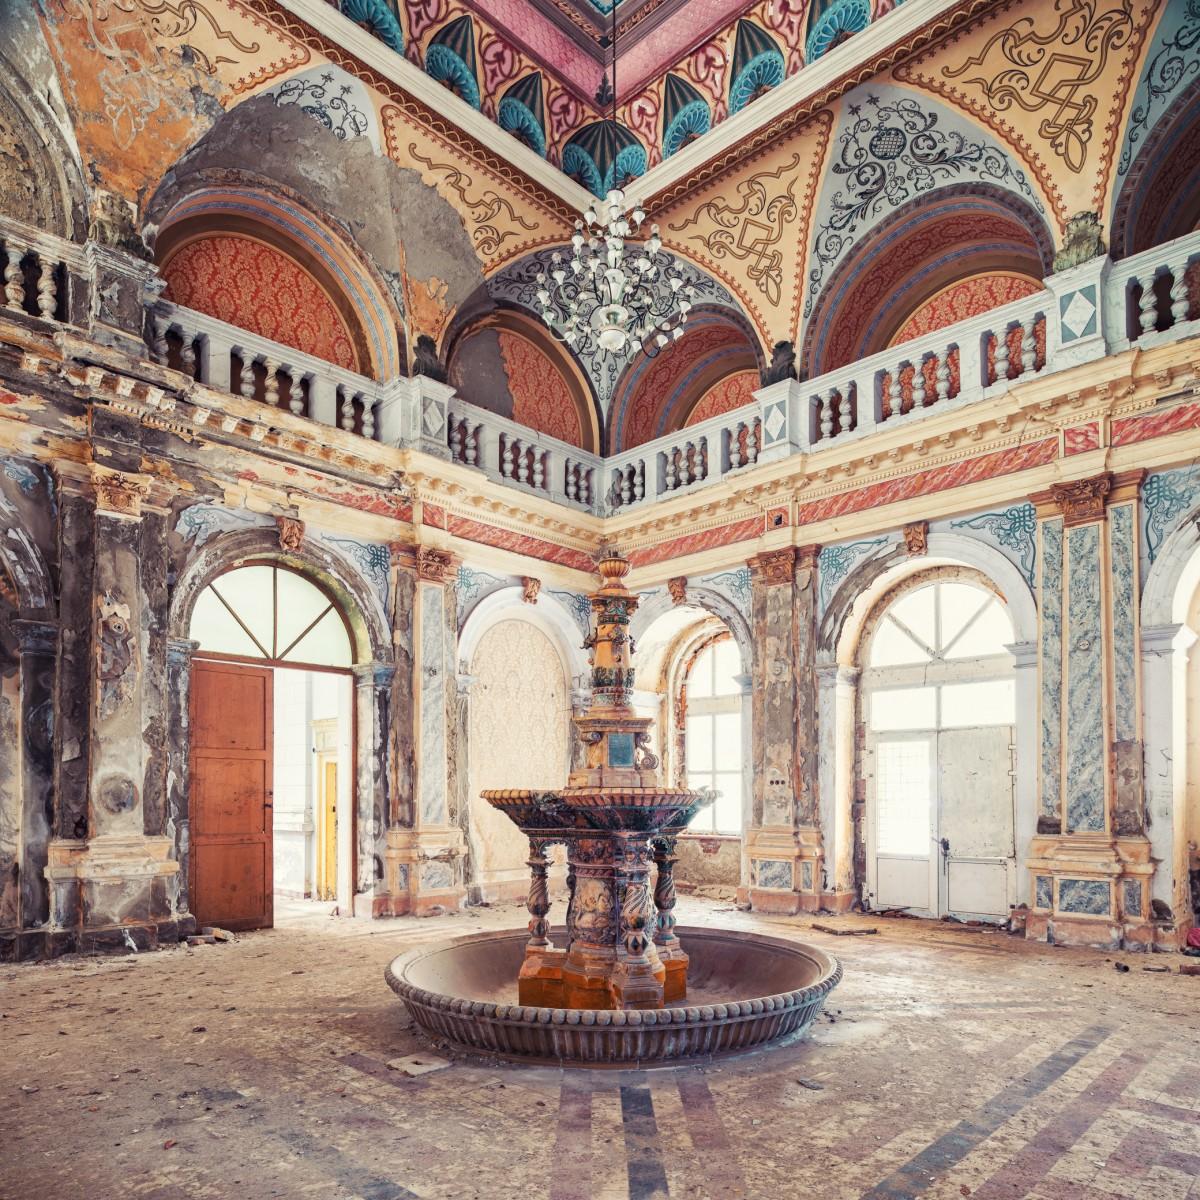 Fantana by Gina Soden - Urbex Photography, abandoned palace, Italy